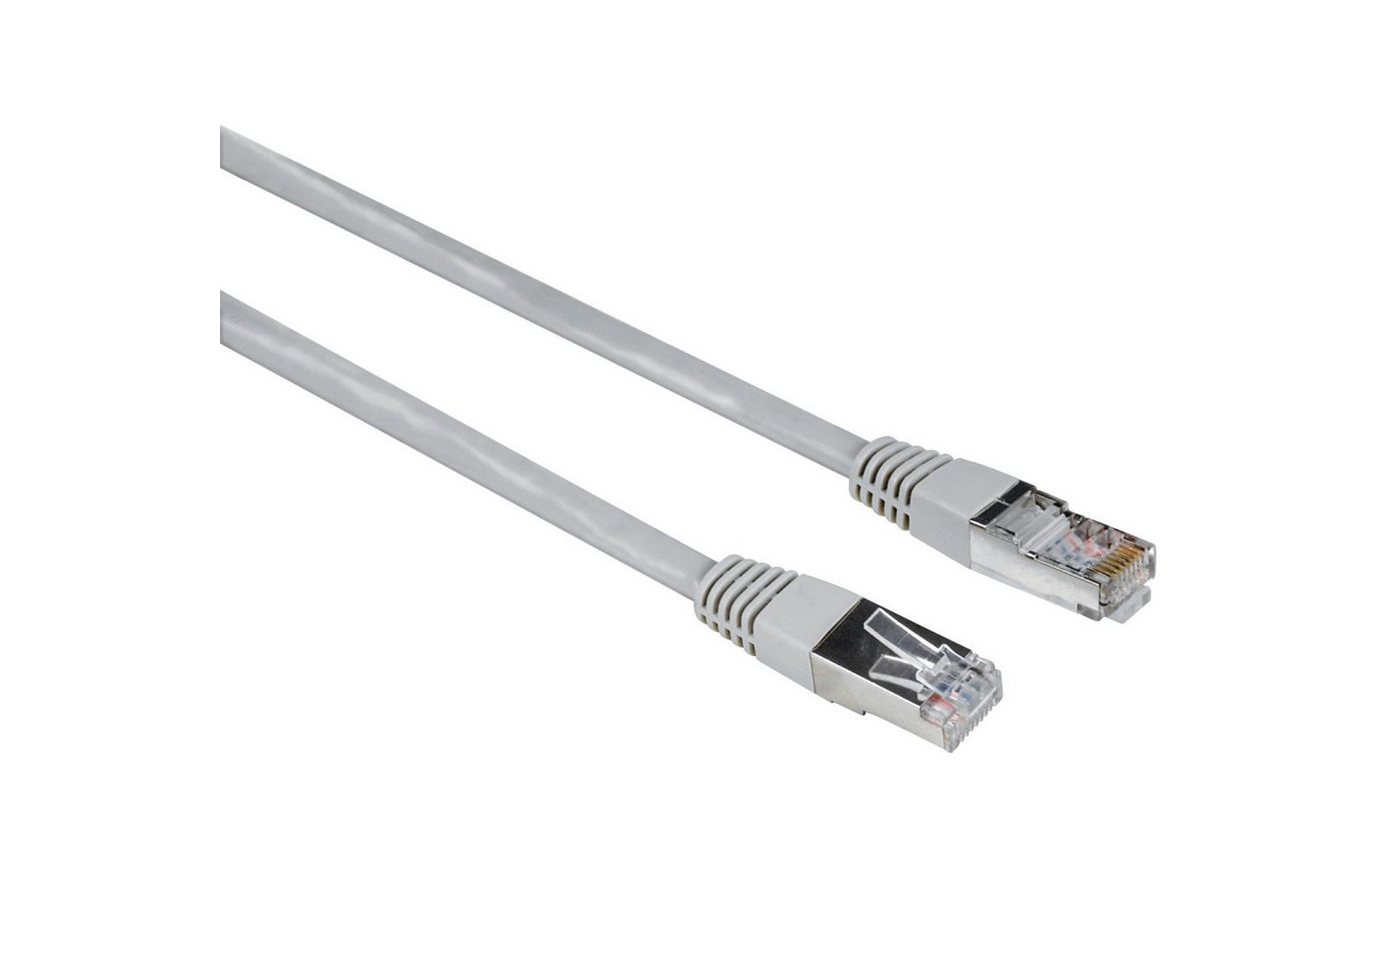 Hama 5m Netzwerk-Kabel Cat5e STP Lan-Kabel Grau LAN-Kabel, RJ45, Kein (500 cm), Patch-Kabel Cat 5e Gigabit Ethernet von Hama